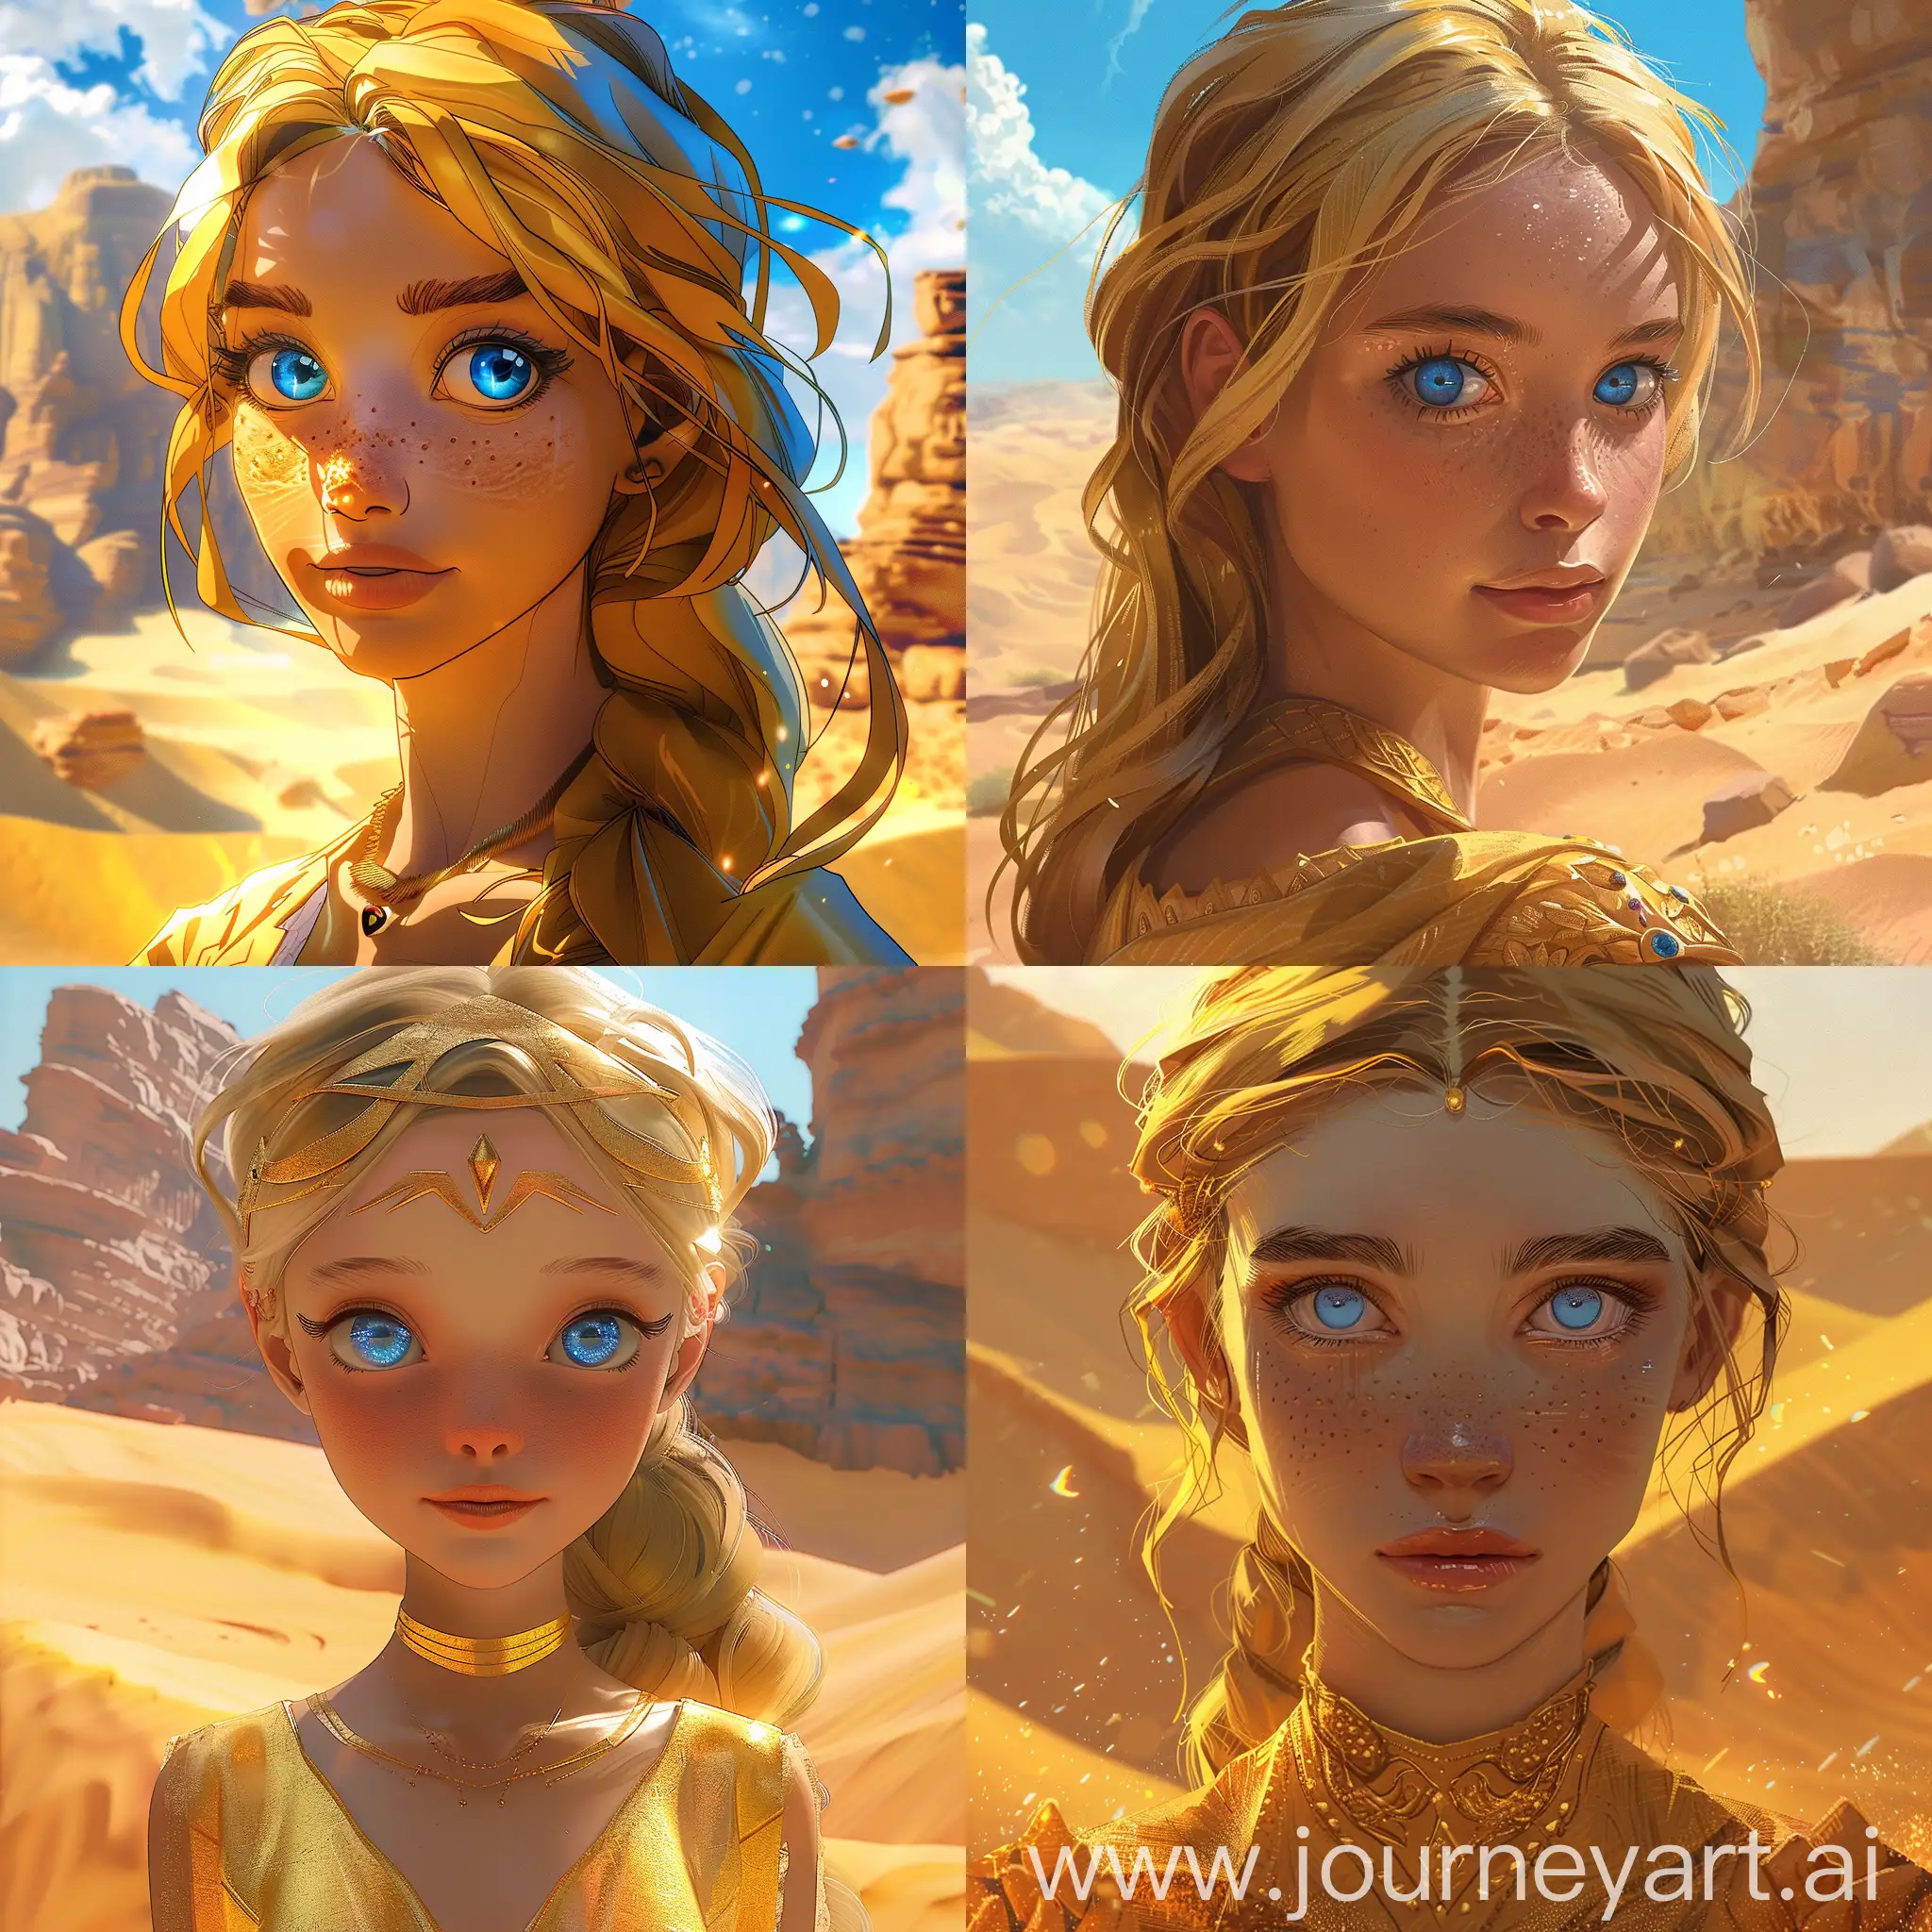 Golden-Princess-in-Blue-Eyes-Standing-in-Desert-Digital-Art